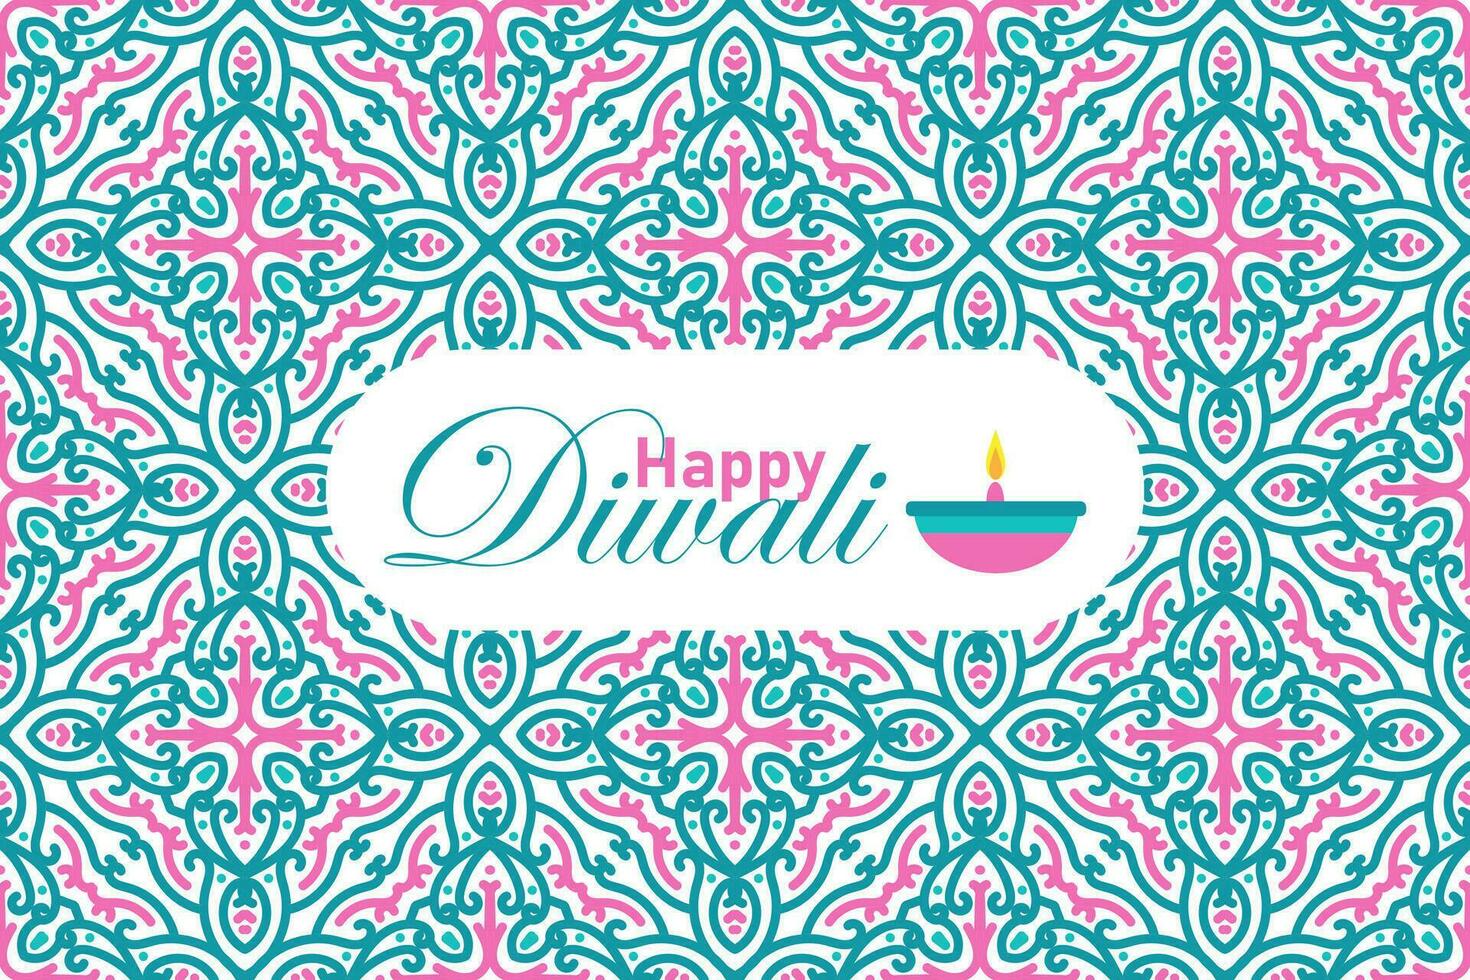 Indisch festival gelukkig diwali naadloos patroon achtergrond, diwali viering groet kaart, vector illustratie ontwerp.